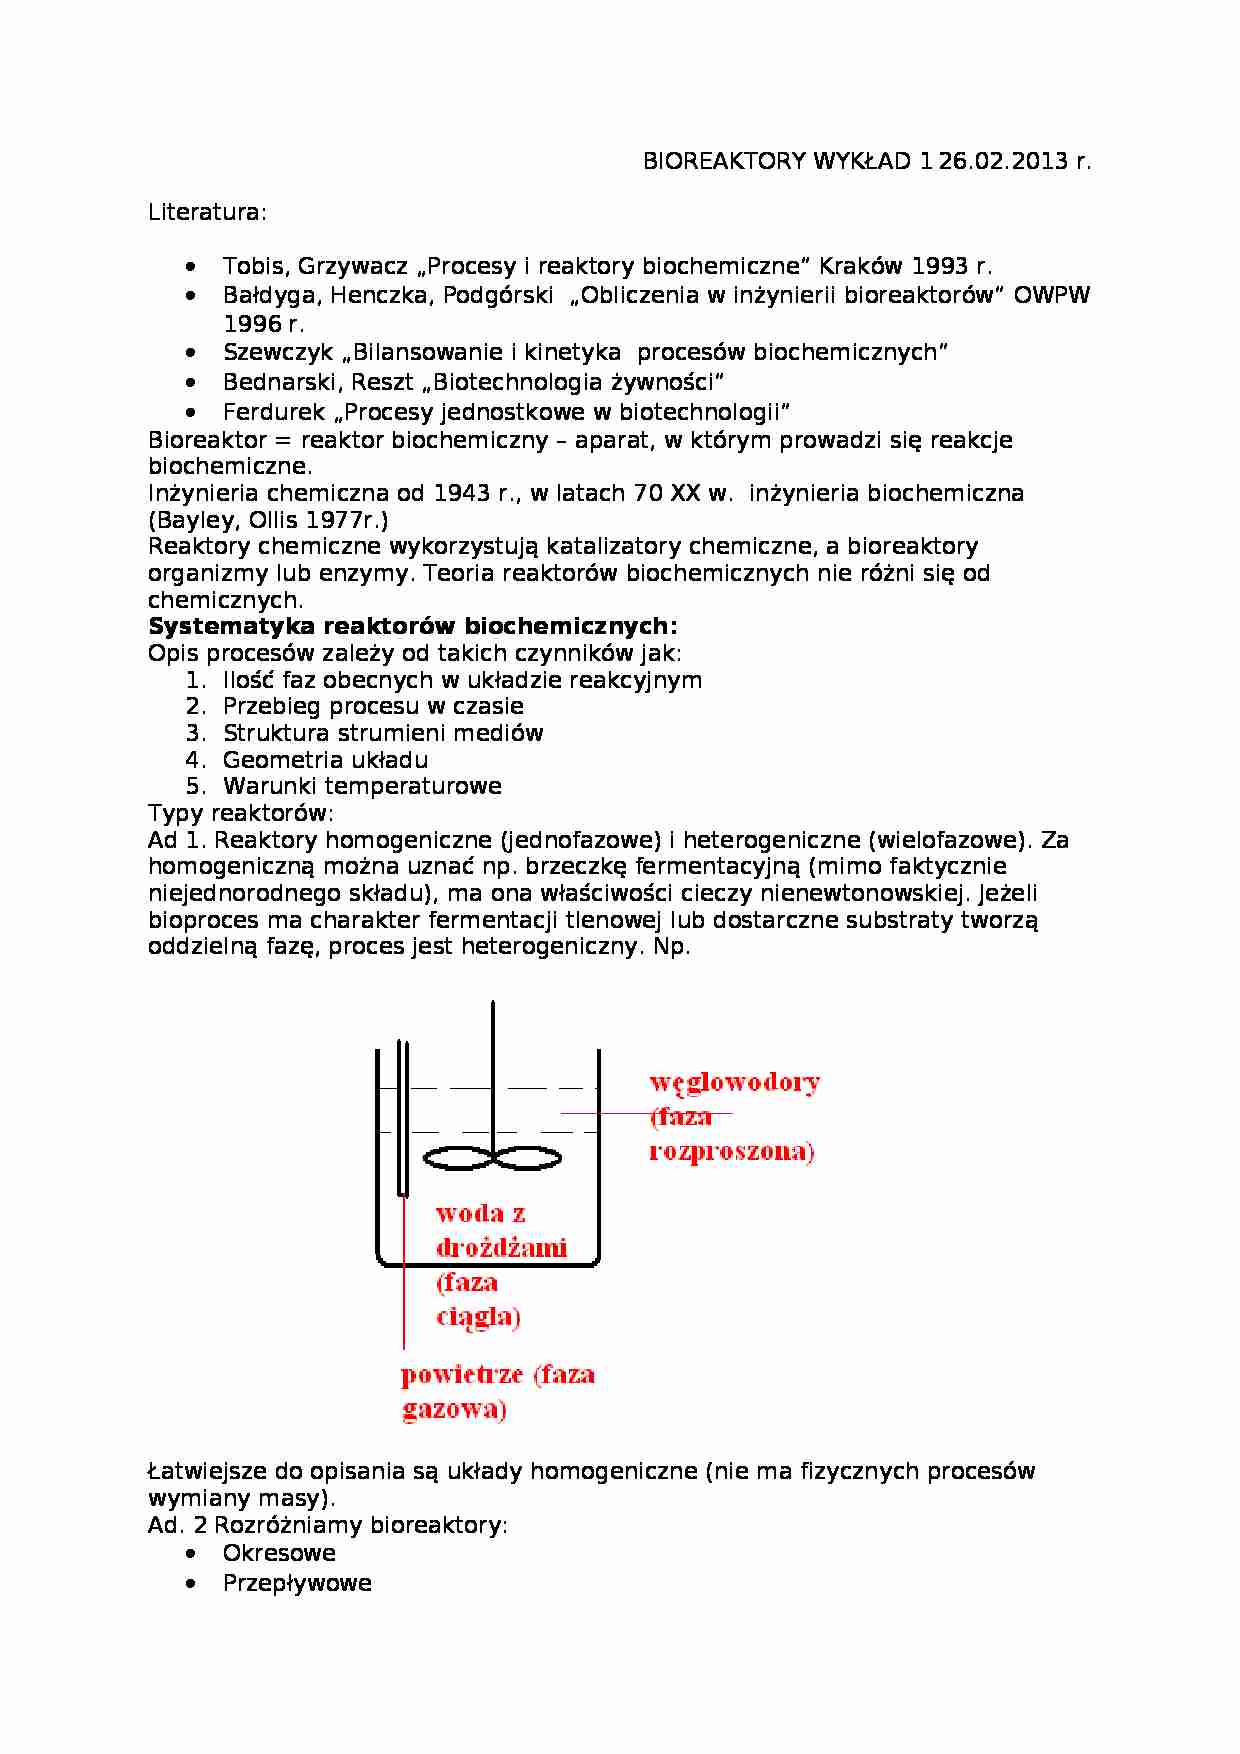 Bioreaktory - wykład - strona 1